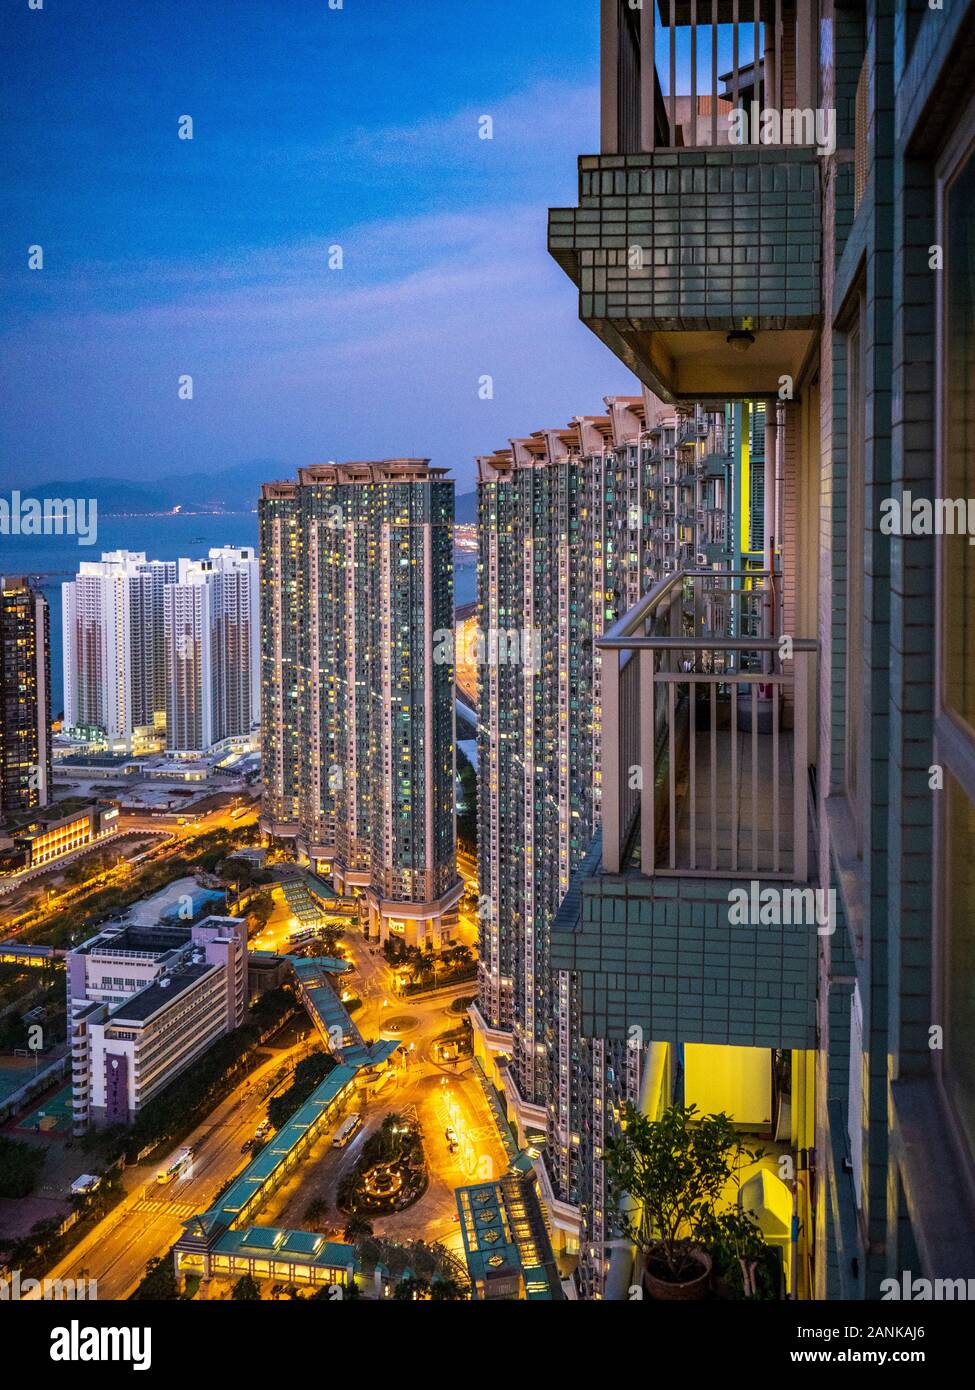 Complexe de la côte des Caraïbes Tung Ching Hong Kong Chine. Immeubles d'appartements haut de gamme à Hong Kong. Banque D'Images